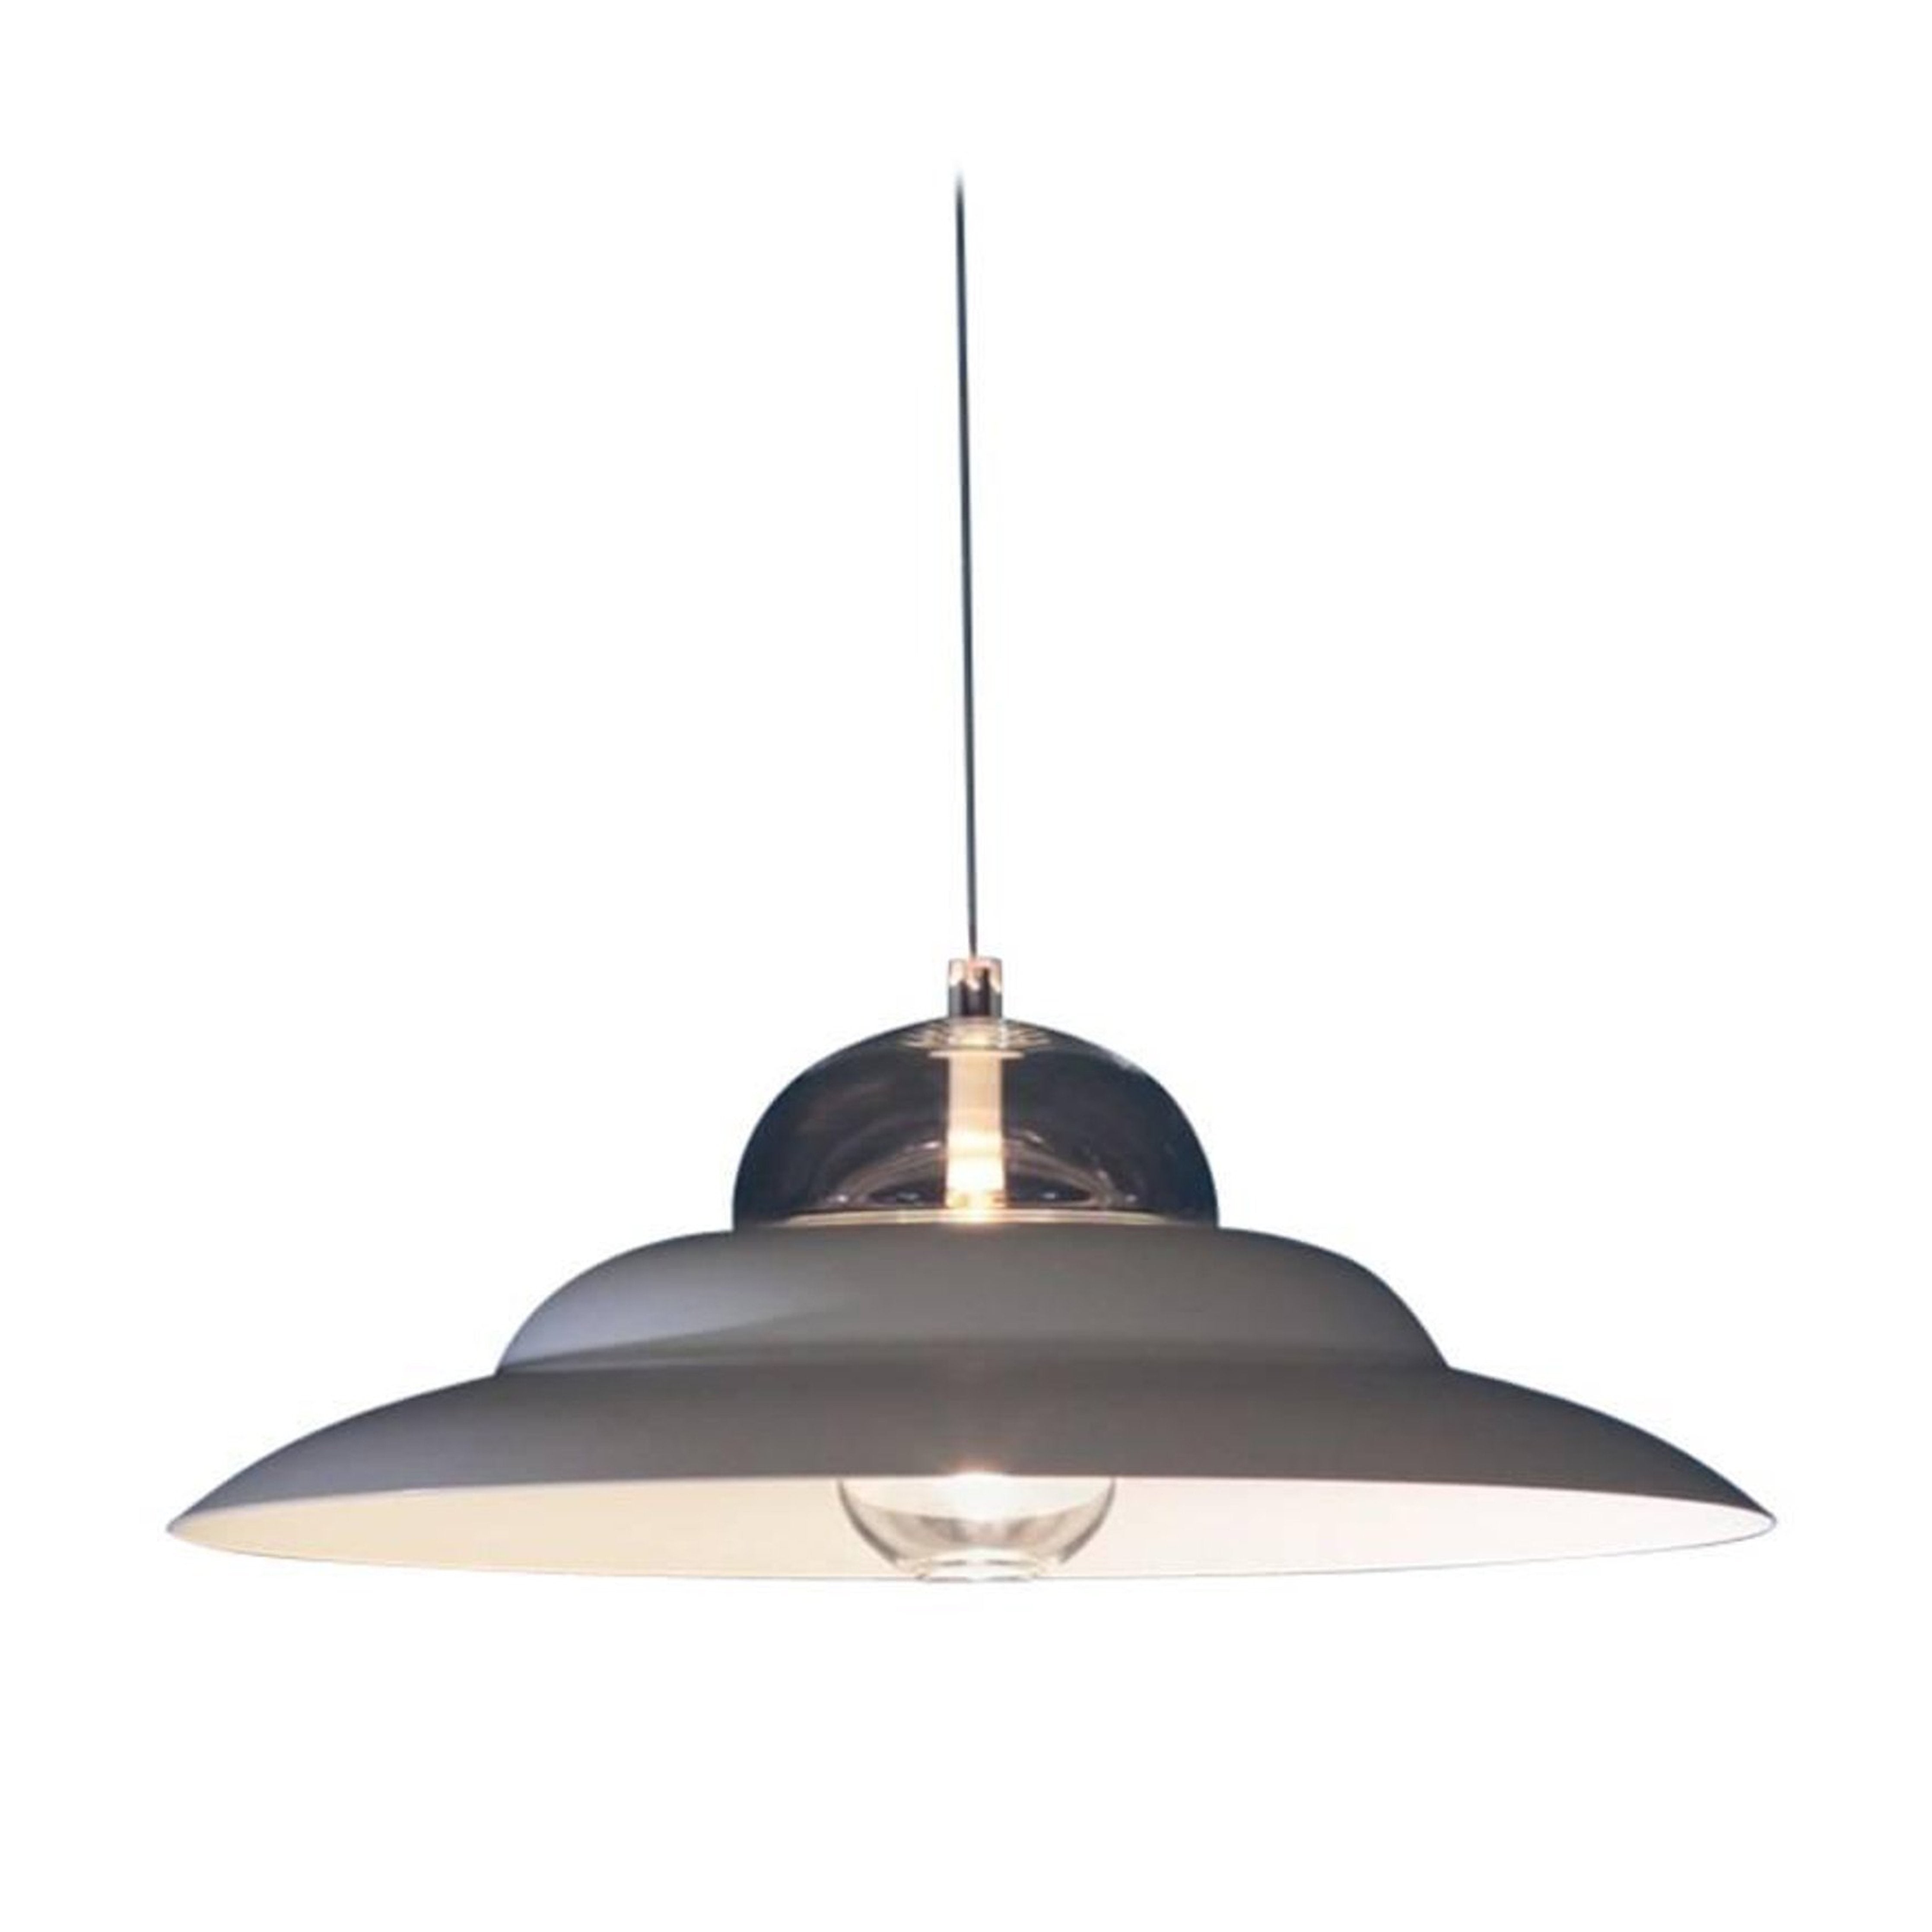 Chapeau ceiling lamp, Michele De Lucchi - ONEROOM